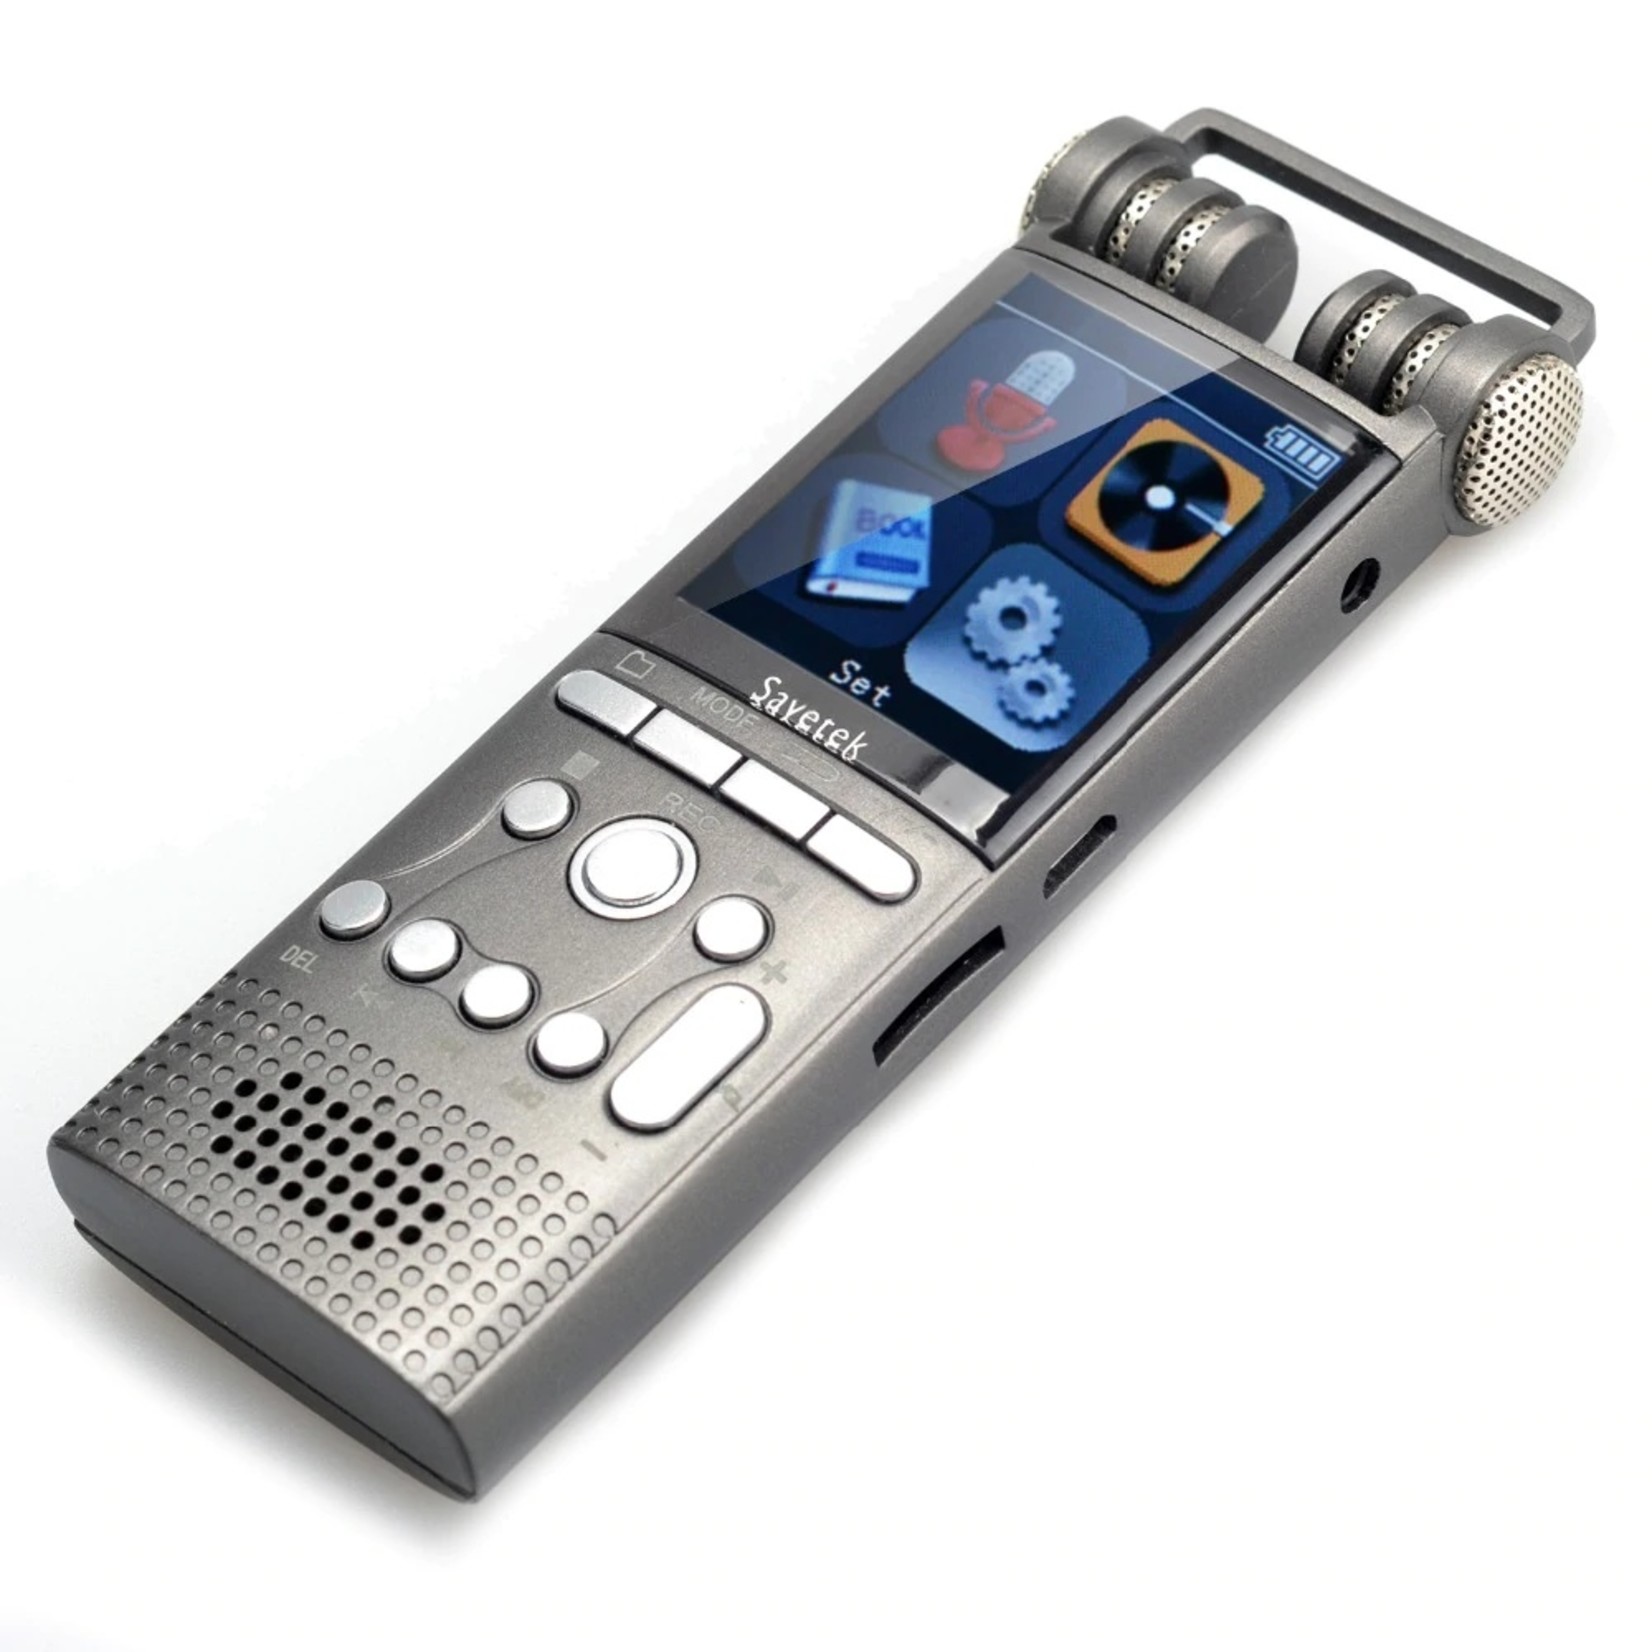 Premium Digitale Recorder - Premium Voice Recorder - Multifunctionele Voice Recorder - Dictafoon 8 GB - Audio Memo Recorder Met USB - Spraak Recorder - Sound – Geluid Recorder - Opname Apparaat - Met MP3 Speler Functie – Zwart